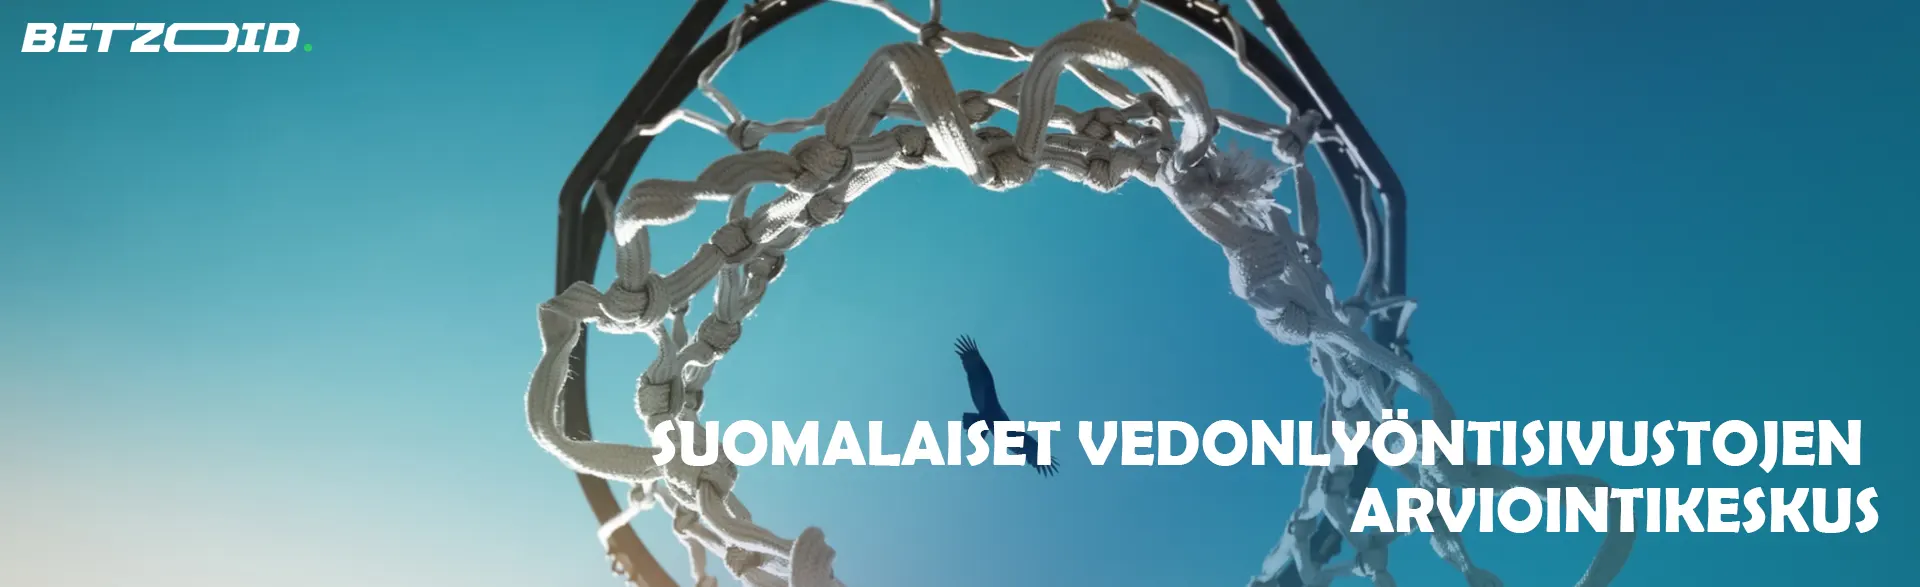 Suomalaiset Vedonlyöntisivustojen Arviointikeskus.